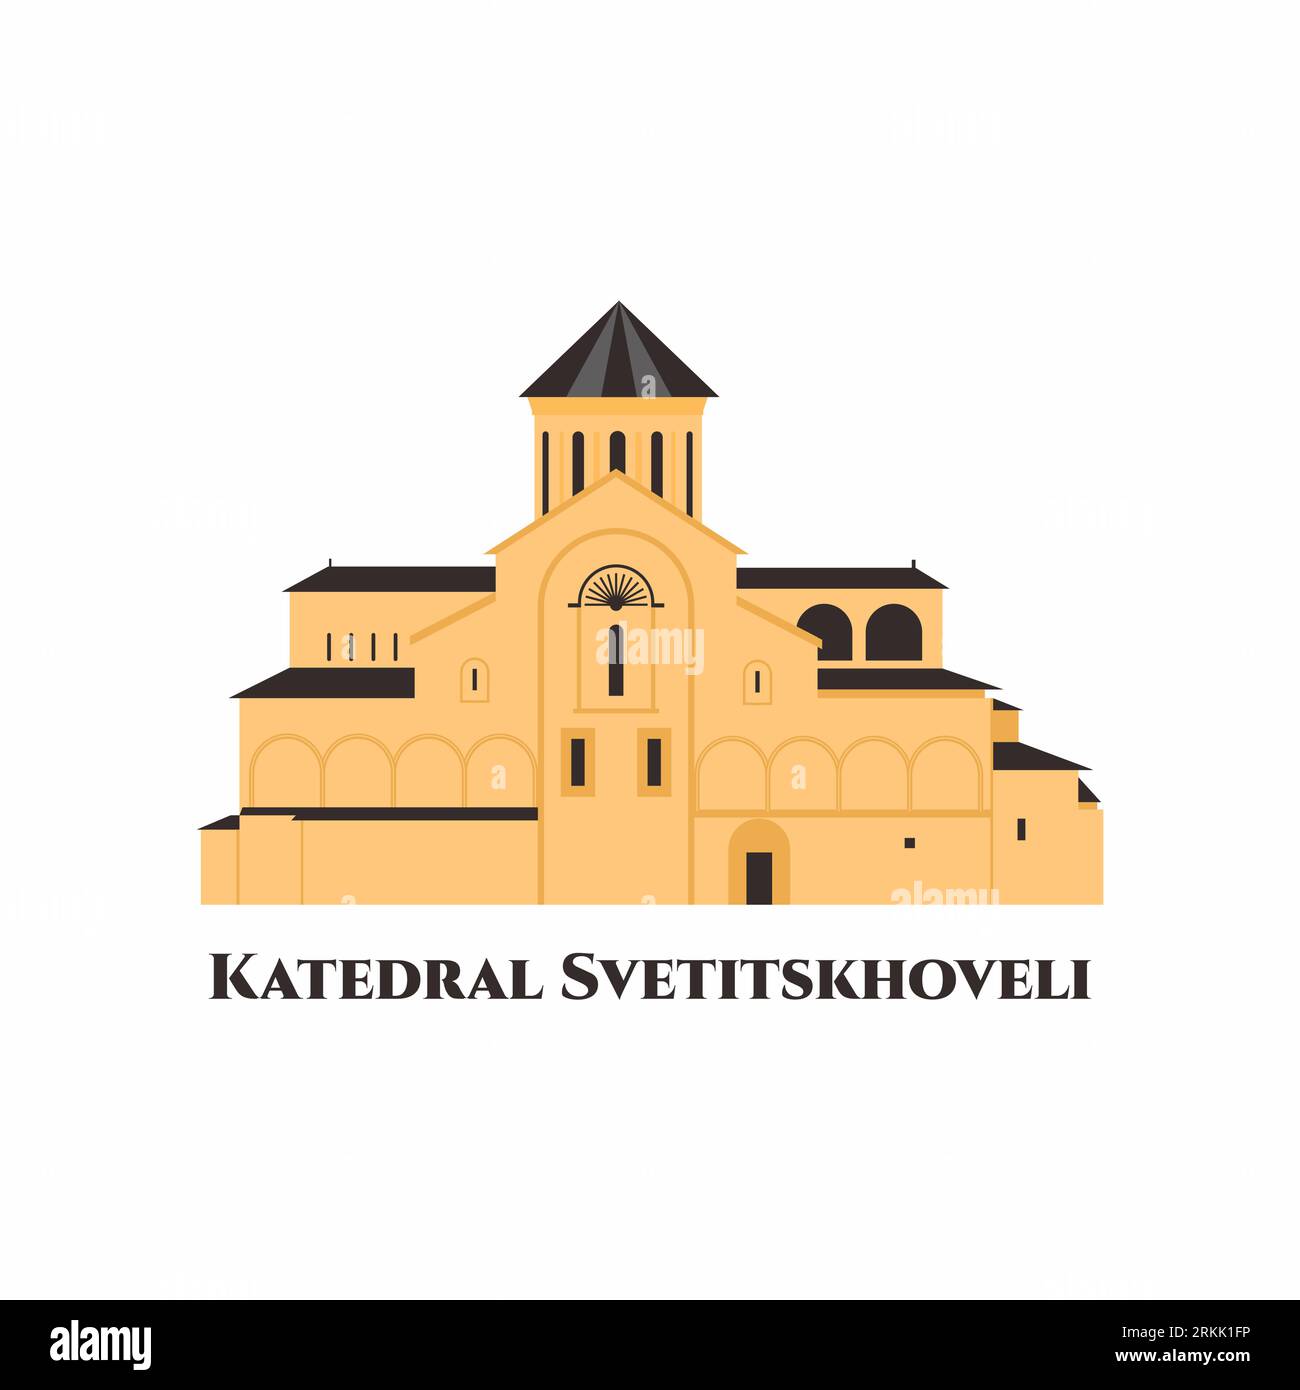 La cathédrale de Svetitskhoveli. Chef-d'œuvre du début et du haut Moyen âge, Svetitskhoveli est reconnu par l'UNESCO comme un site du patrimoine mondial. Voyages Illustration de Vecteur